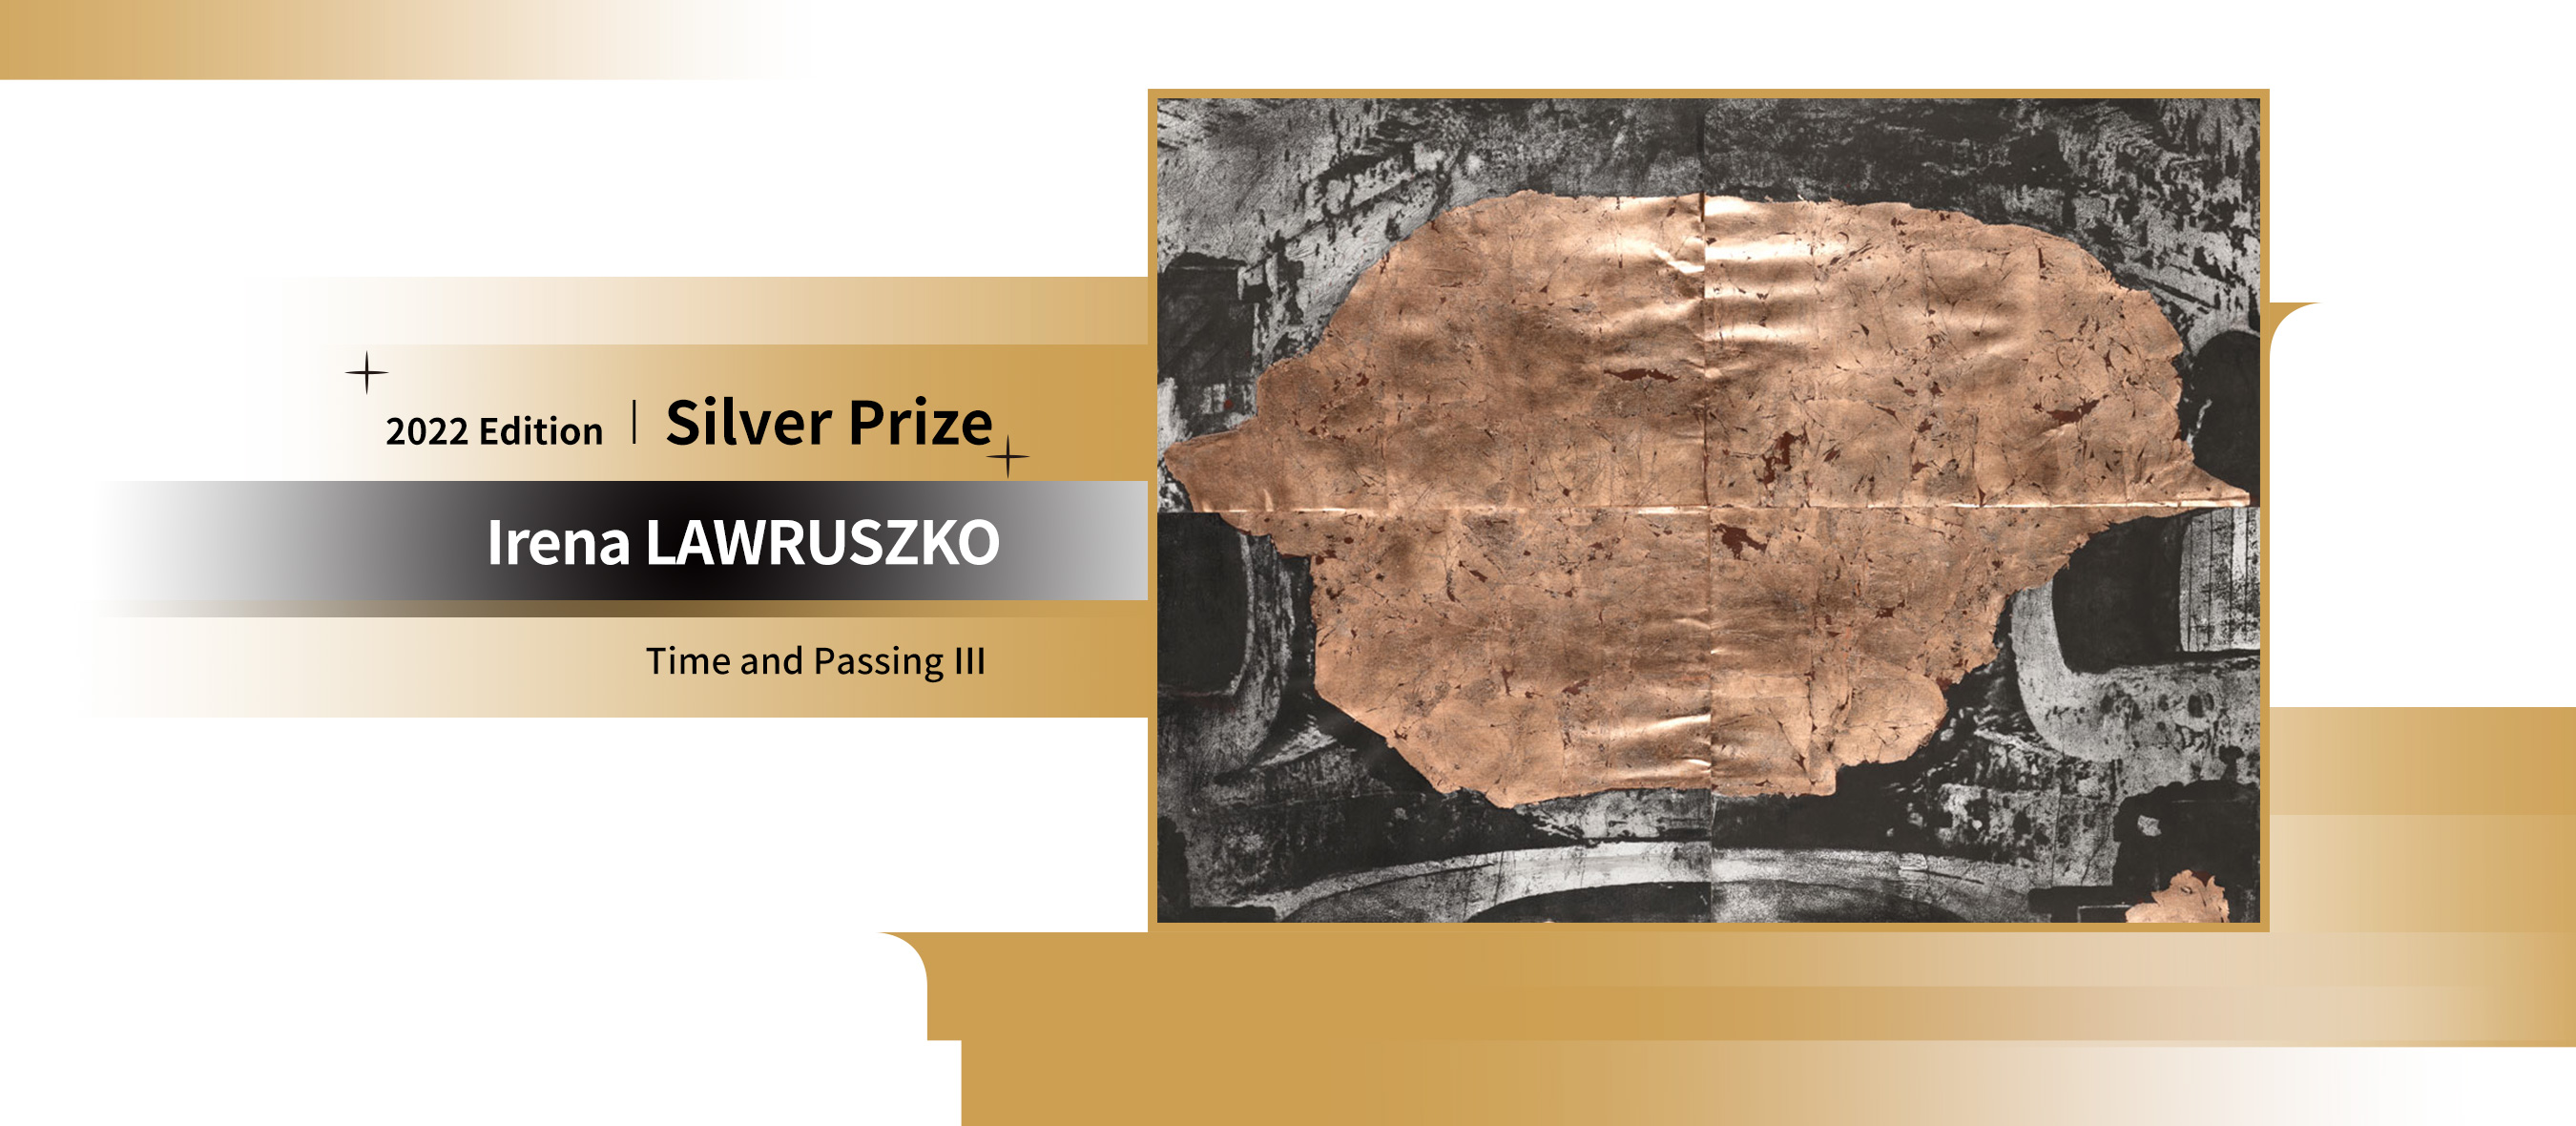 Silver Prize:Henryk KROLIKOWSKI